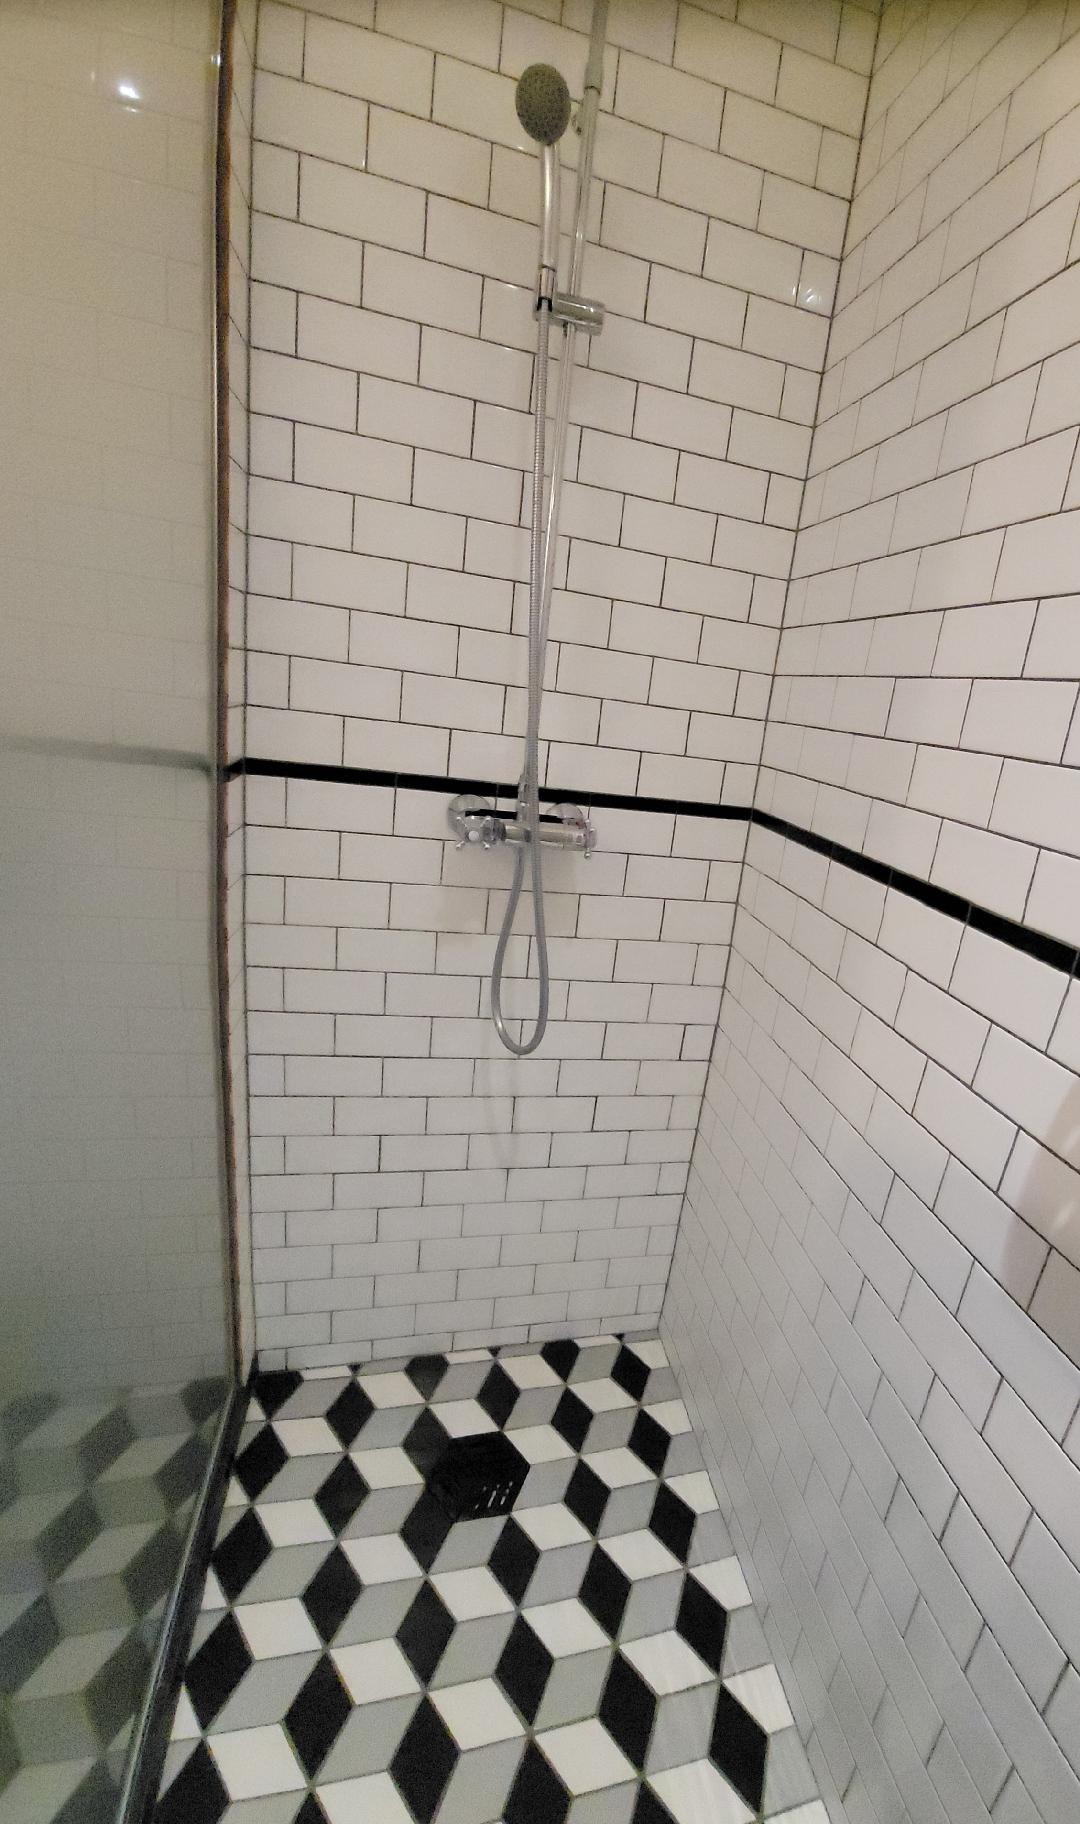 Kvosin Hotel Shower